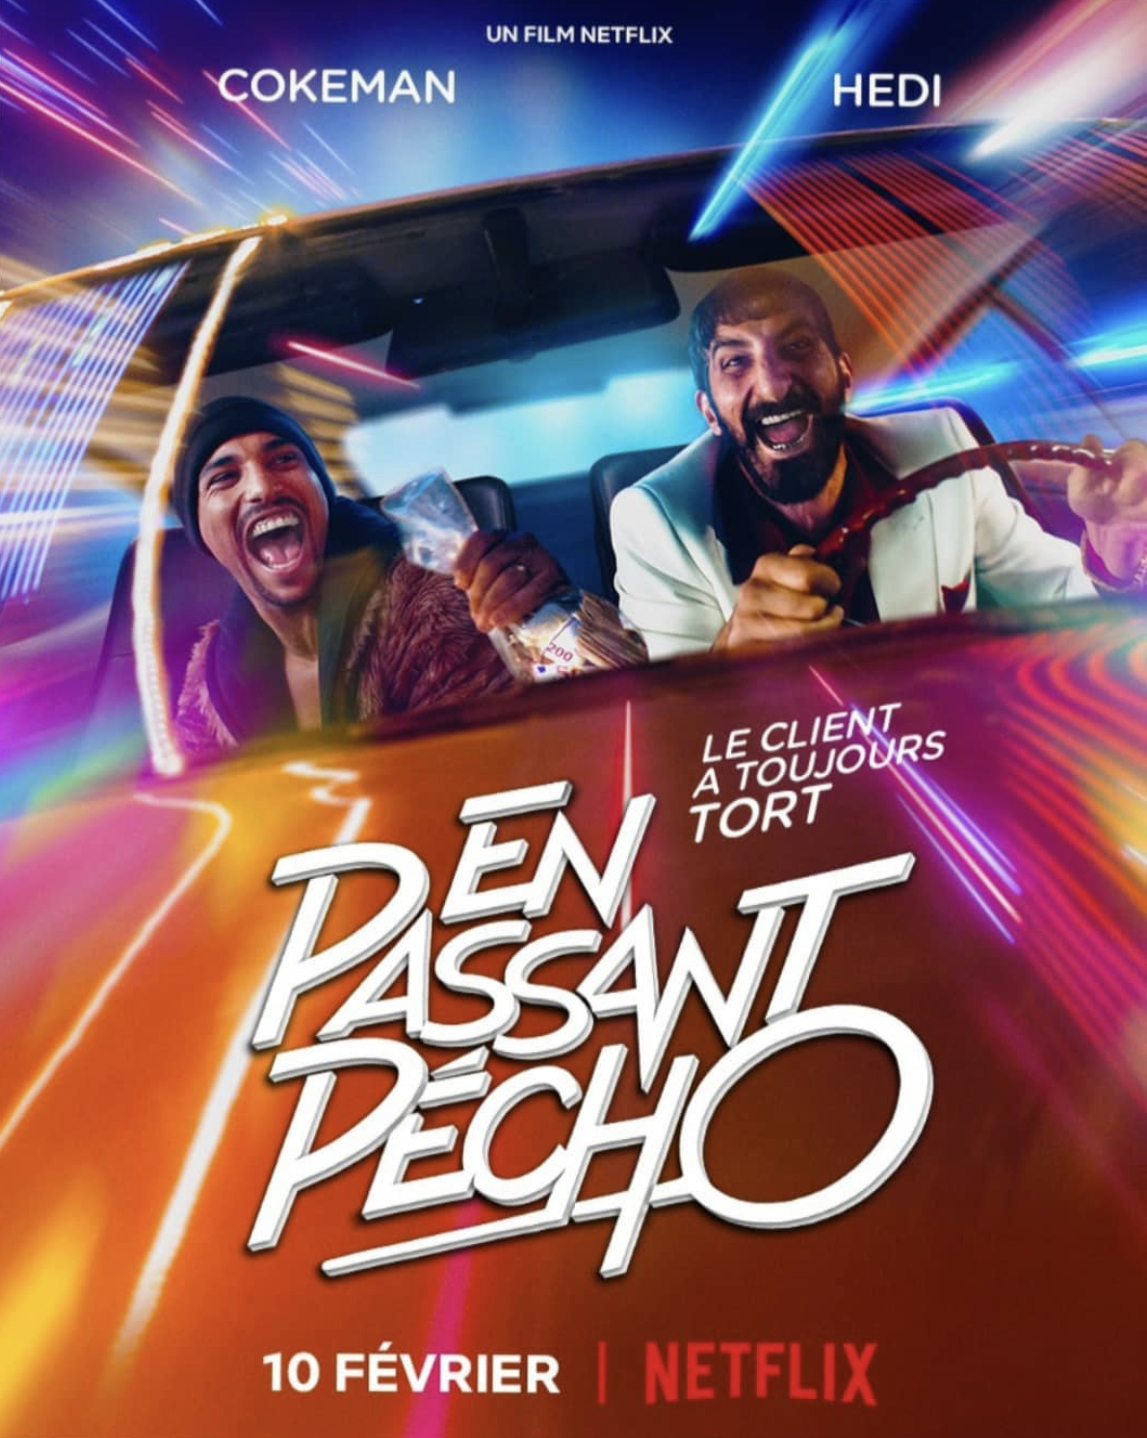 En Passant Pécho: Les Carottes Sont Cuites Aka The Misadventures of Hedi and Cokeman (2021)